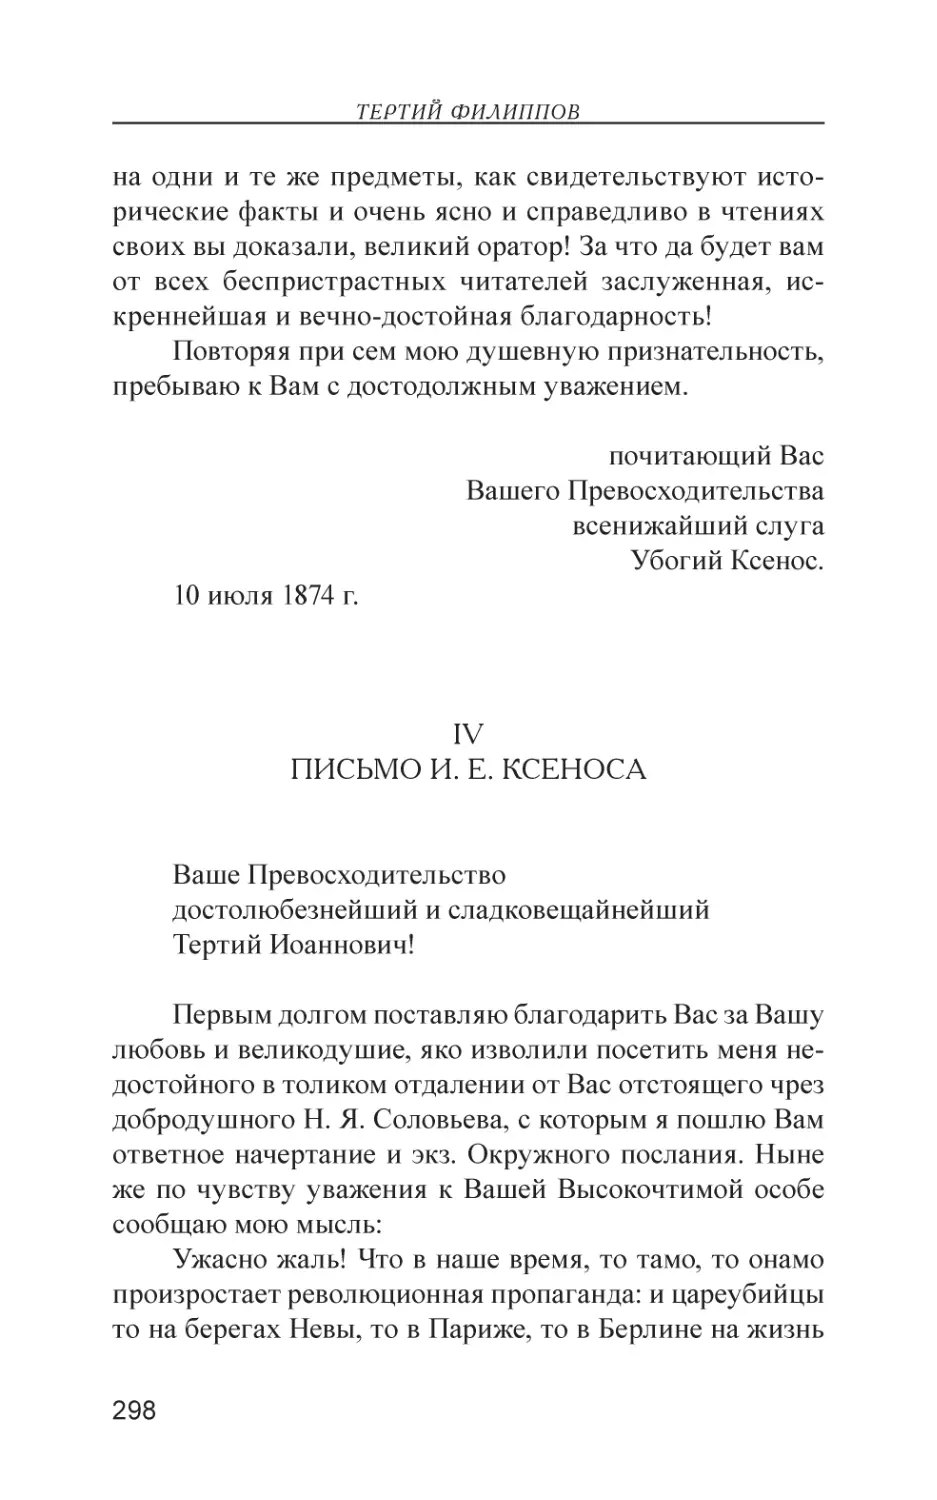 IV. Письмо И. Е. Ксеноса